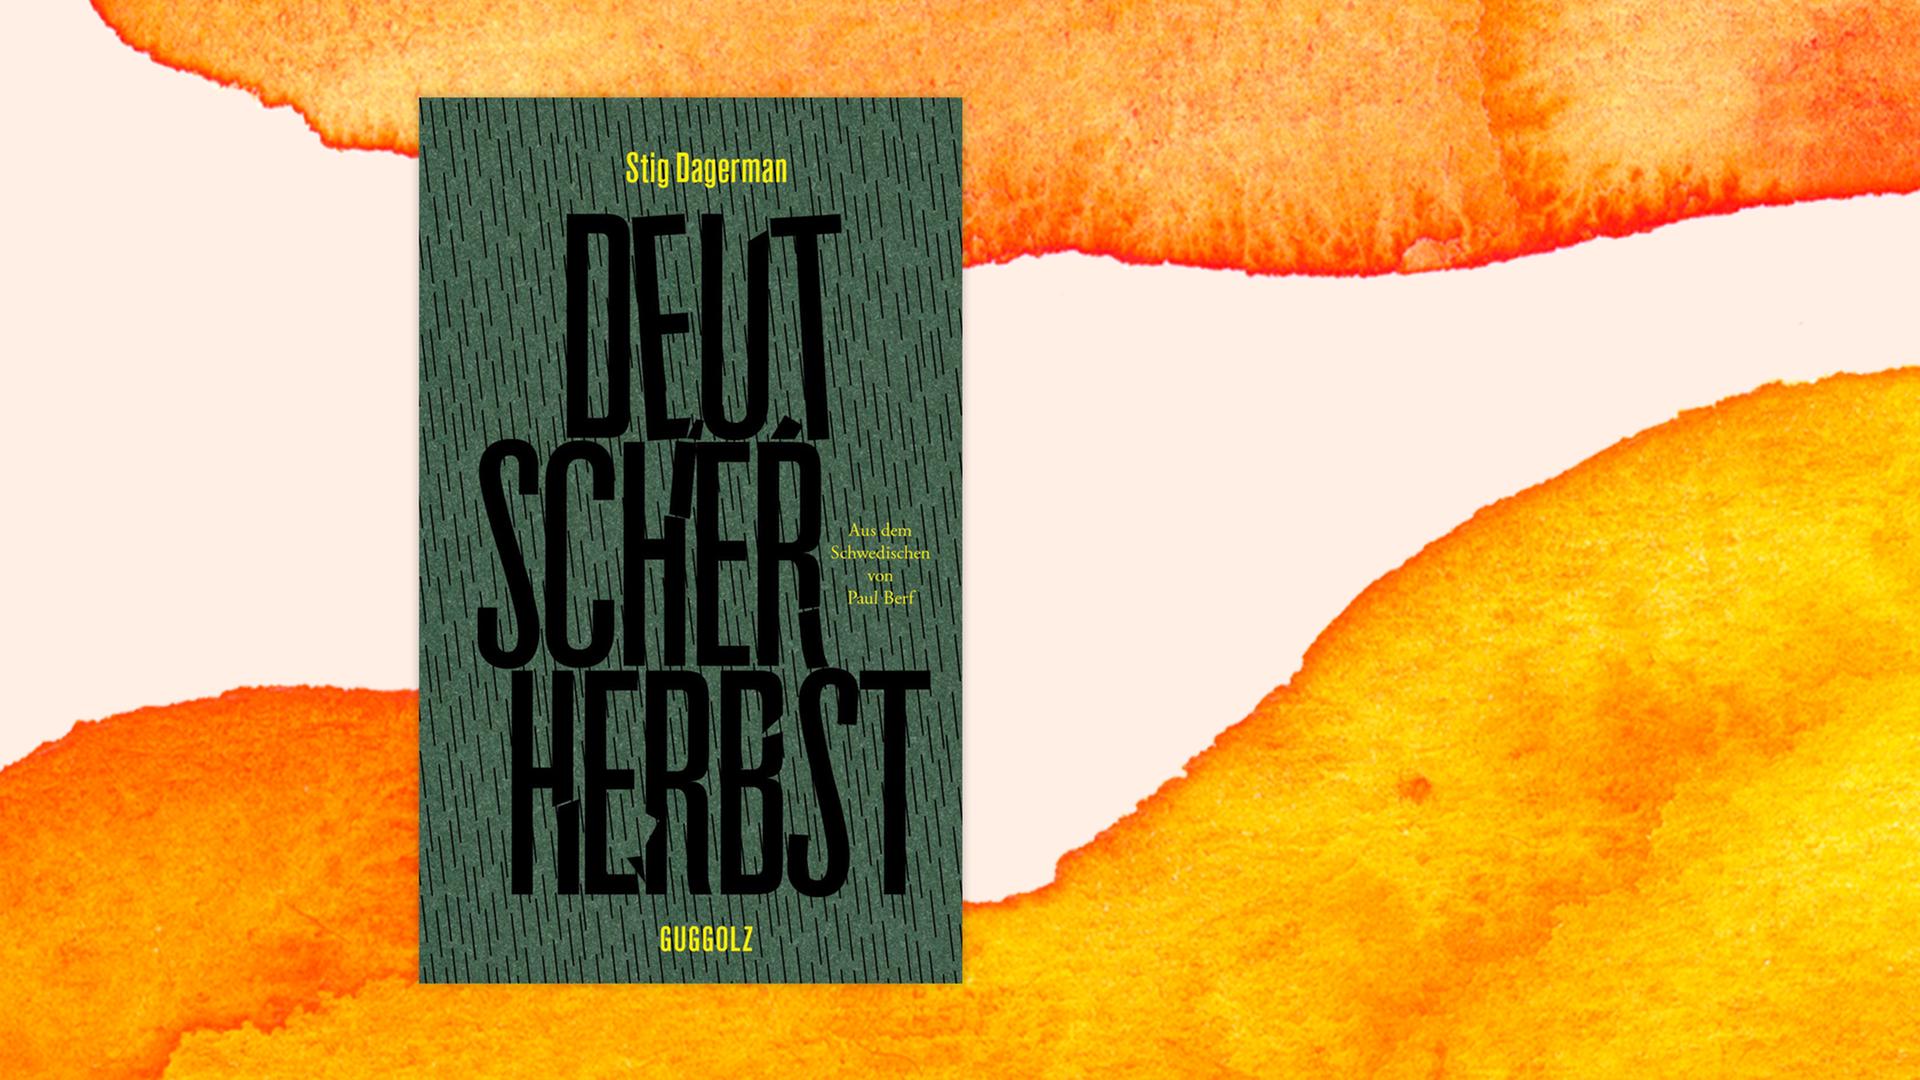 Buchcover von Stig Dagermans Band "Deutscher Herbst" mit Reportagen von 1946, in deutscher Übersetzung erschienen im Herbst 2021